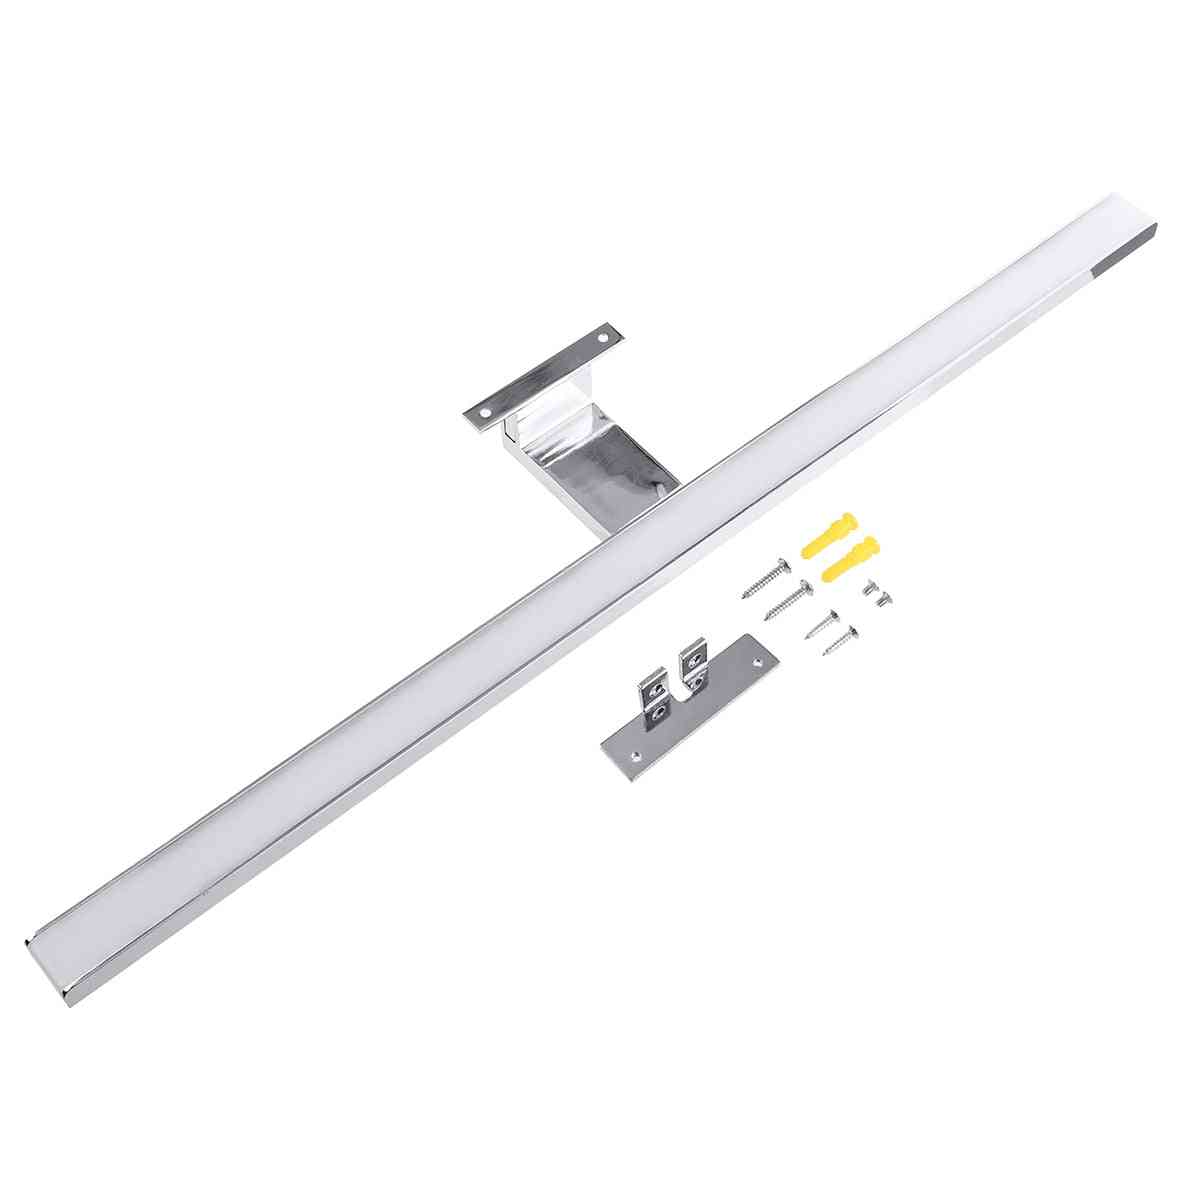 10w / 800lm / 60cm - lámpara de espejo de luz de pared led de interior blanca iluminación de aluminio impermeable para baño, espejo de baño -